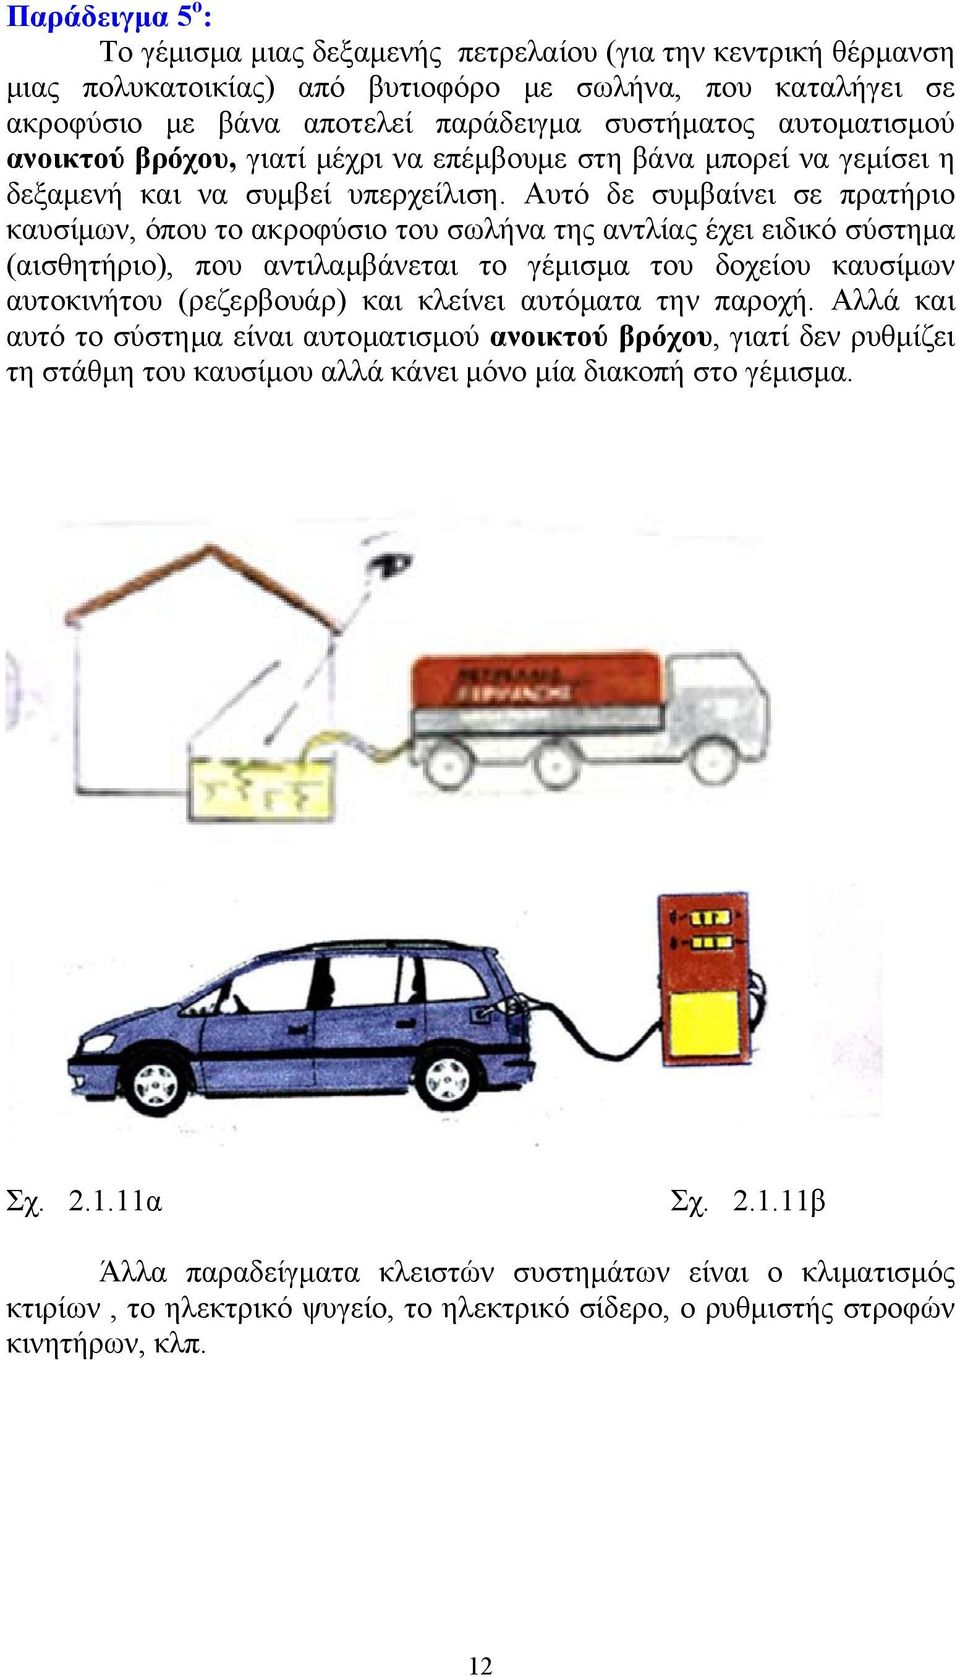 Αυτό δε συμβαίνει σε πρατήριο καυσίμων, όπου το ακροφύσιο του σωλήνα της αντλίας έχει ειδικό σύστημα (αισθητήριο), που αντιλαμβάνεται το γέμισμα του δοχείου καυσίμων αυτοκινήτου (ρεζερβουάρ) και